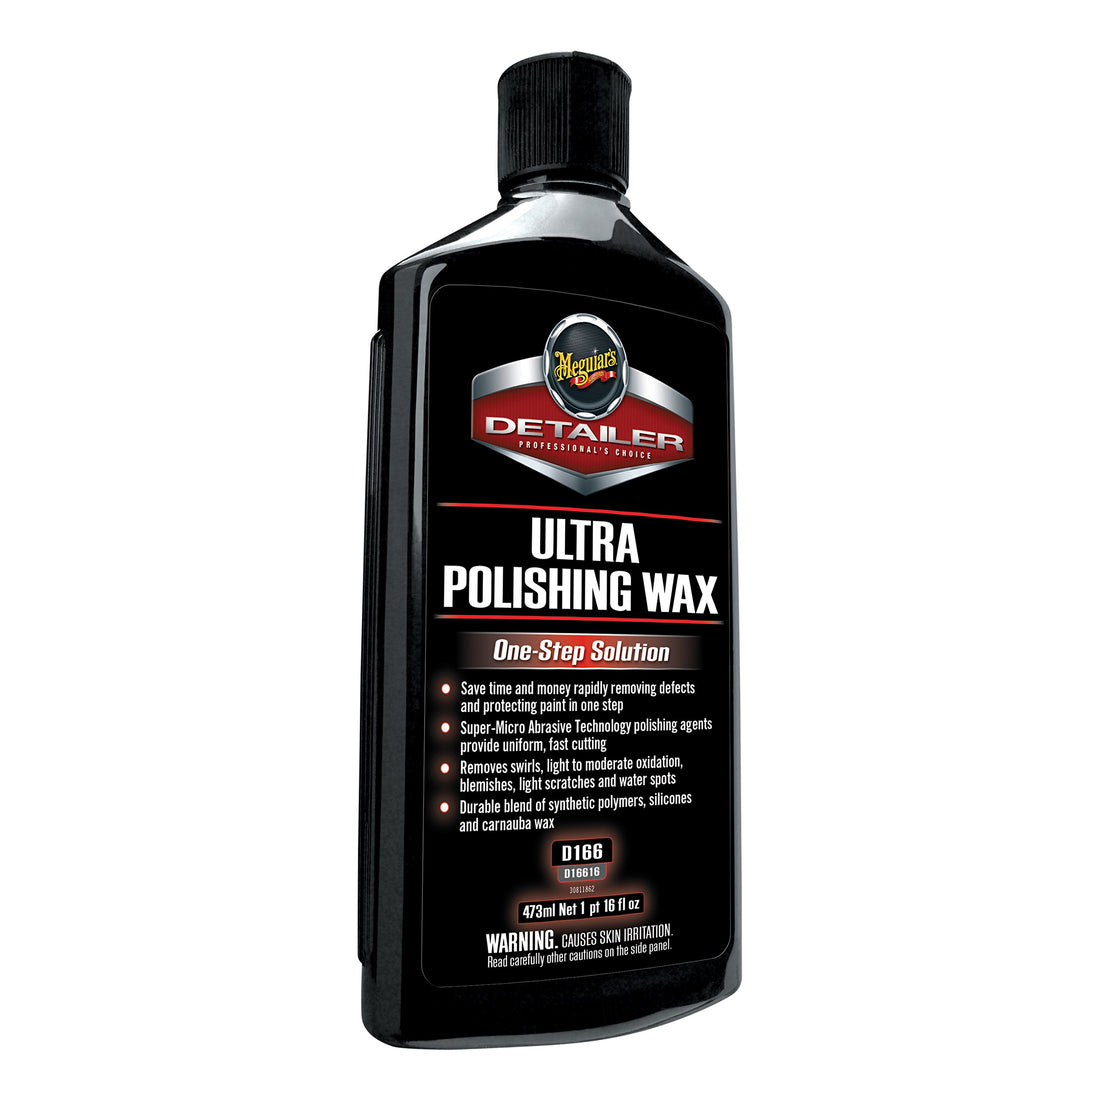 Ultra Polishing Wax